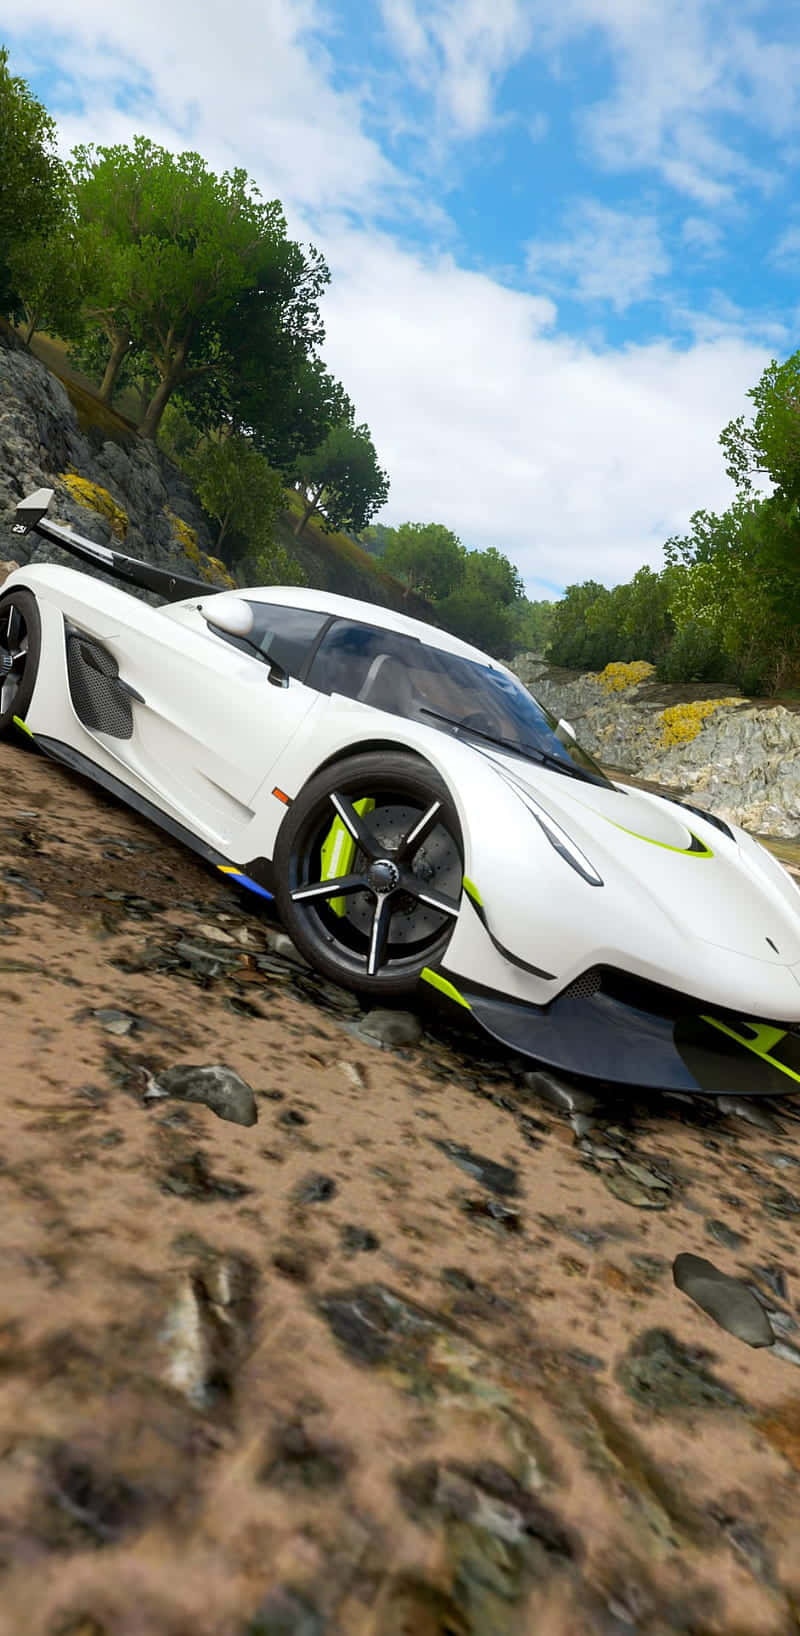 !Konkurrer på mere end 450 forskellige biler i Forza Horizon 4!